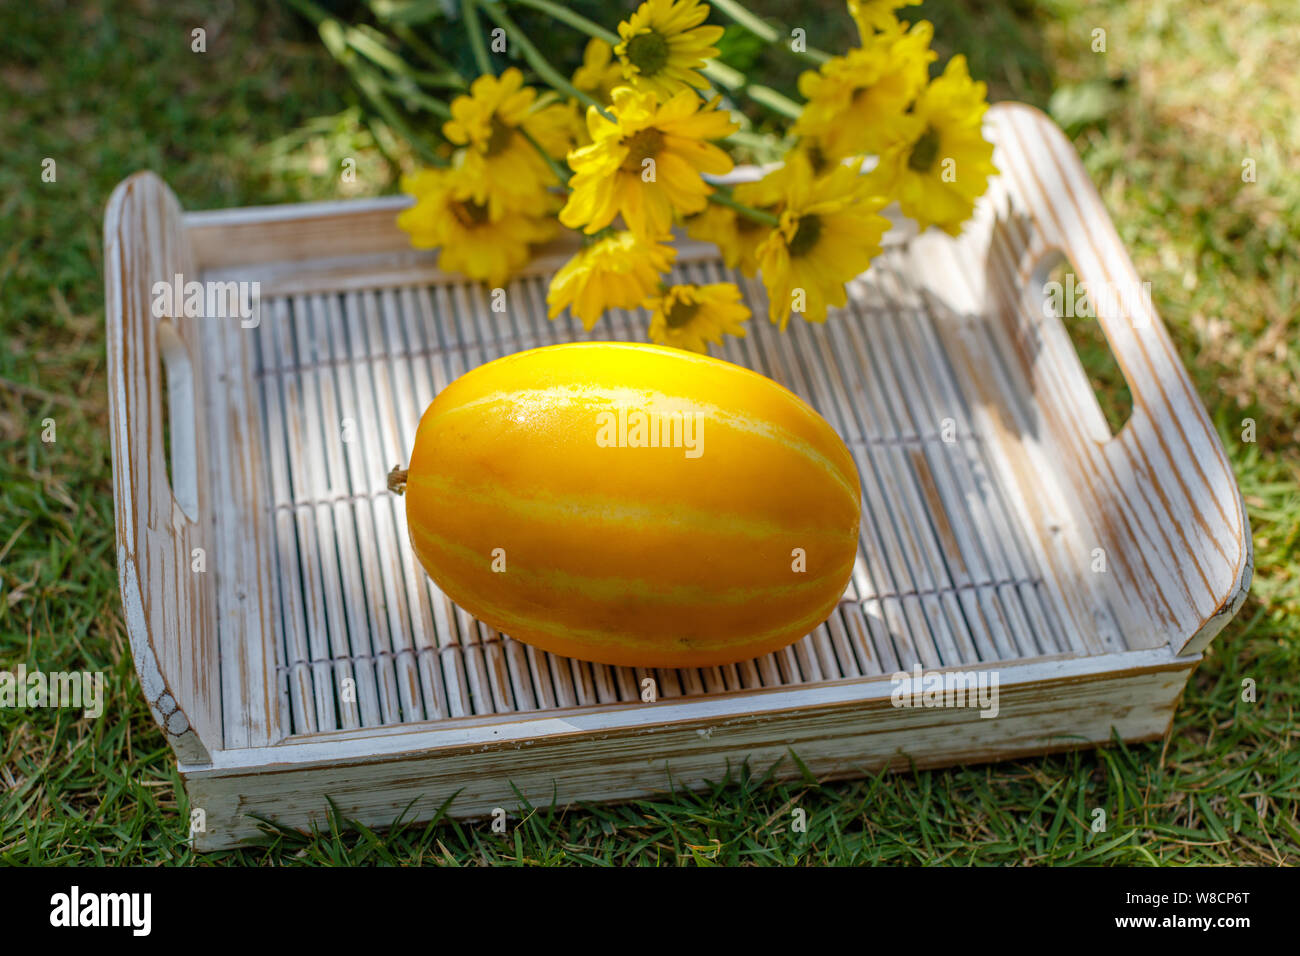 Yellow Oriental melon (Korean melon)  on a white wooden tray. Yellow Chrysanthemum on the background. Stock Photo